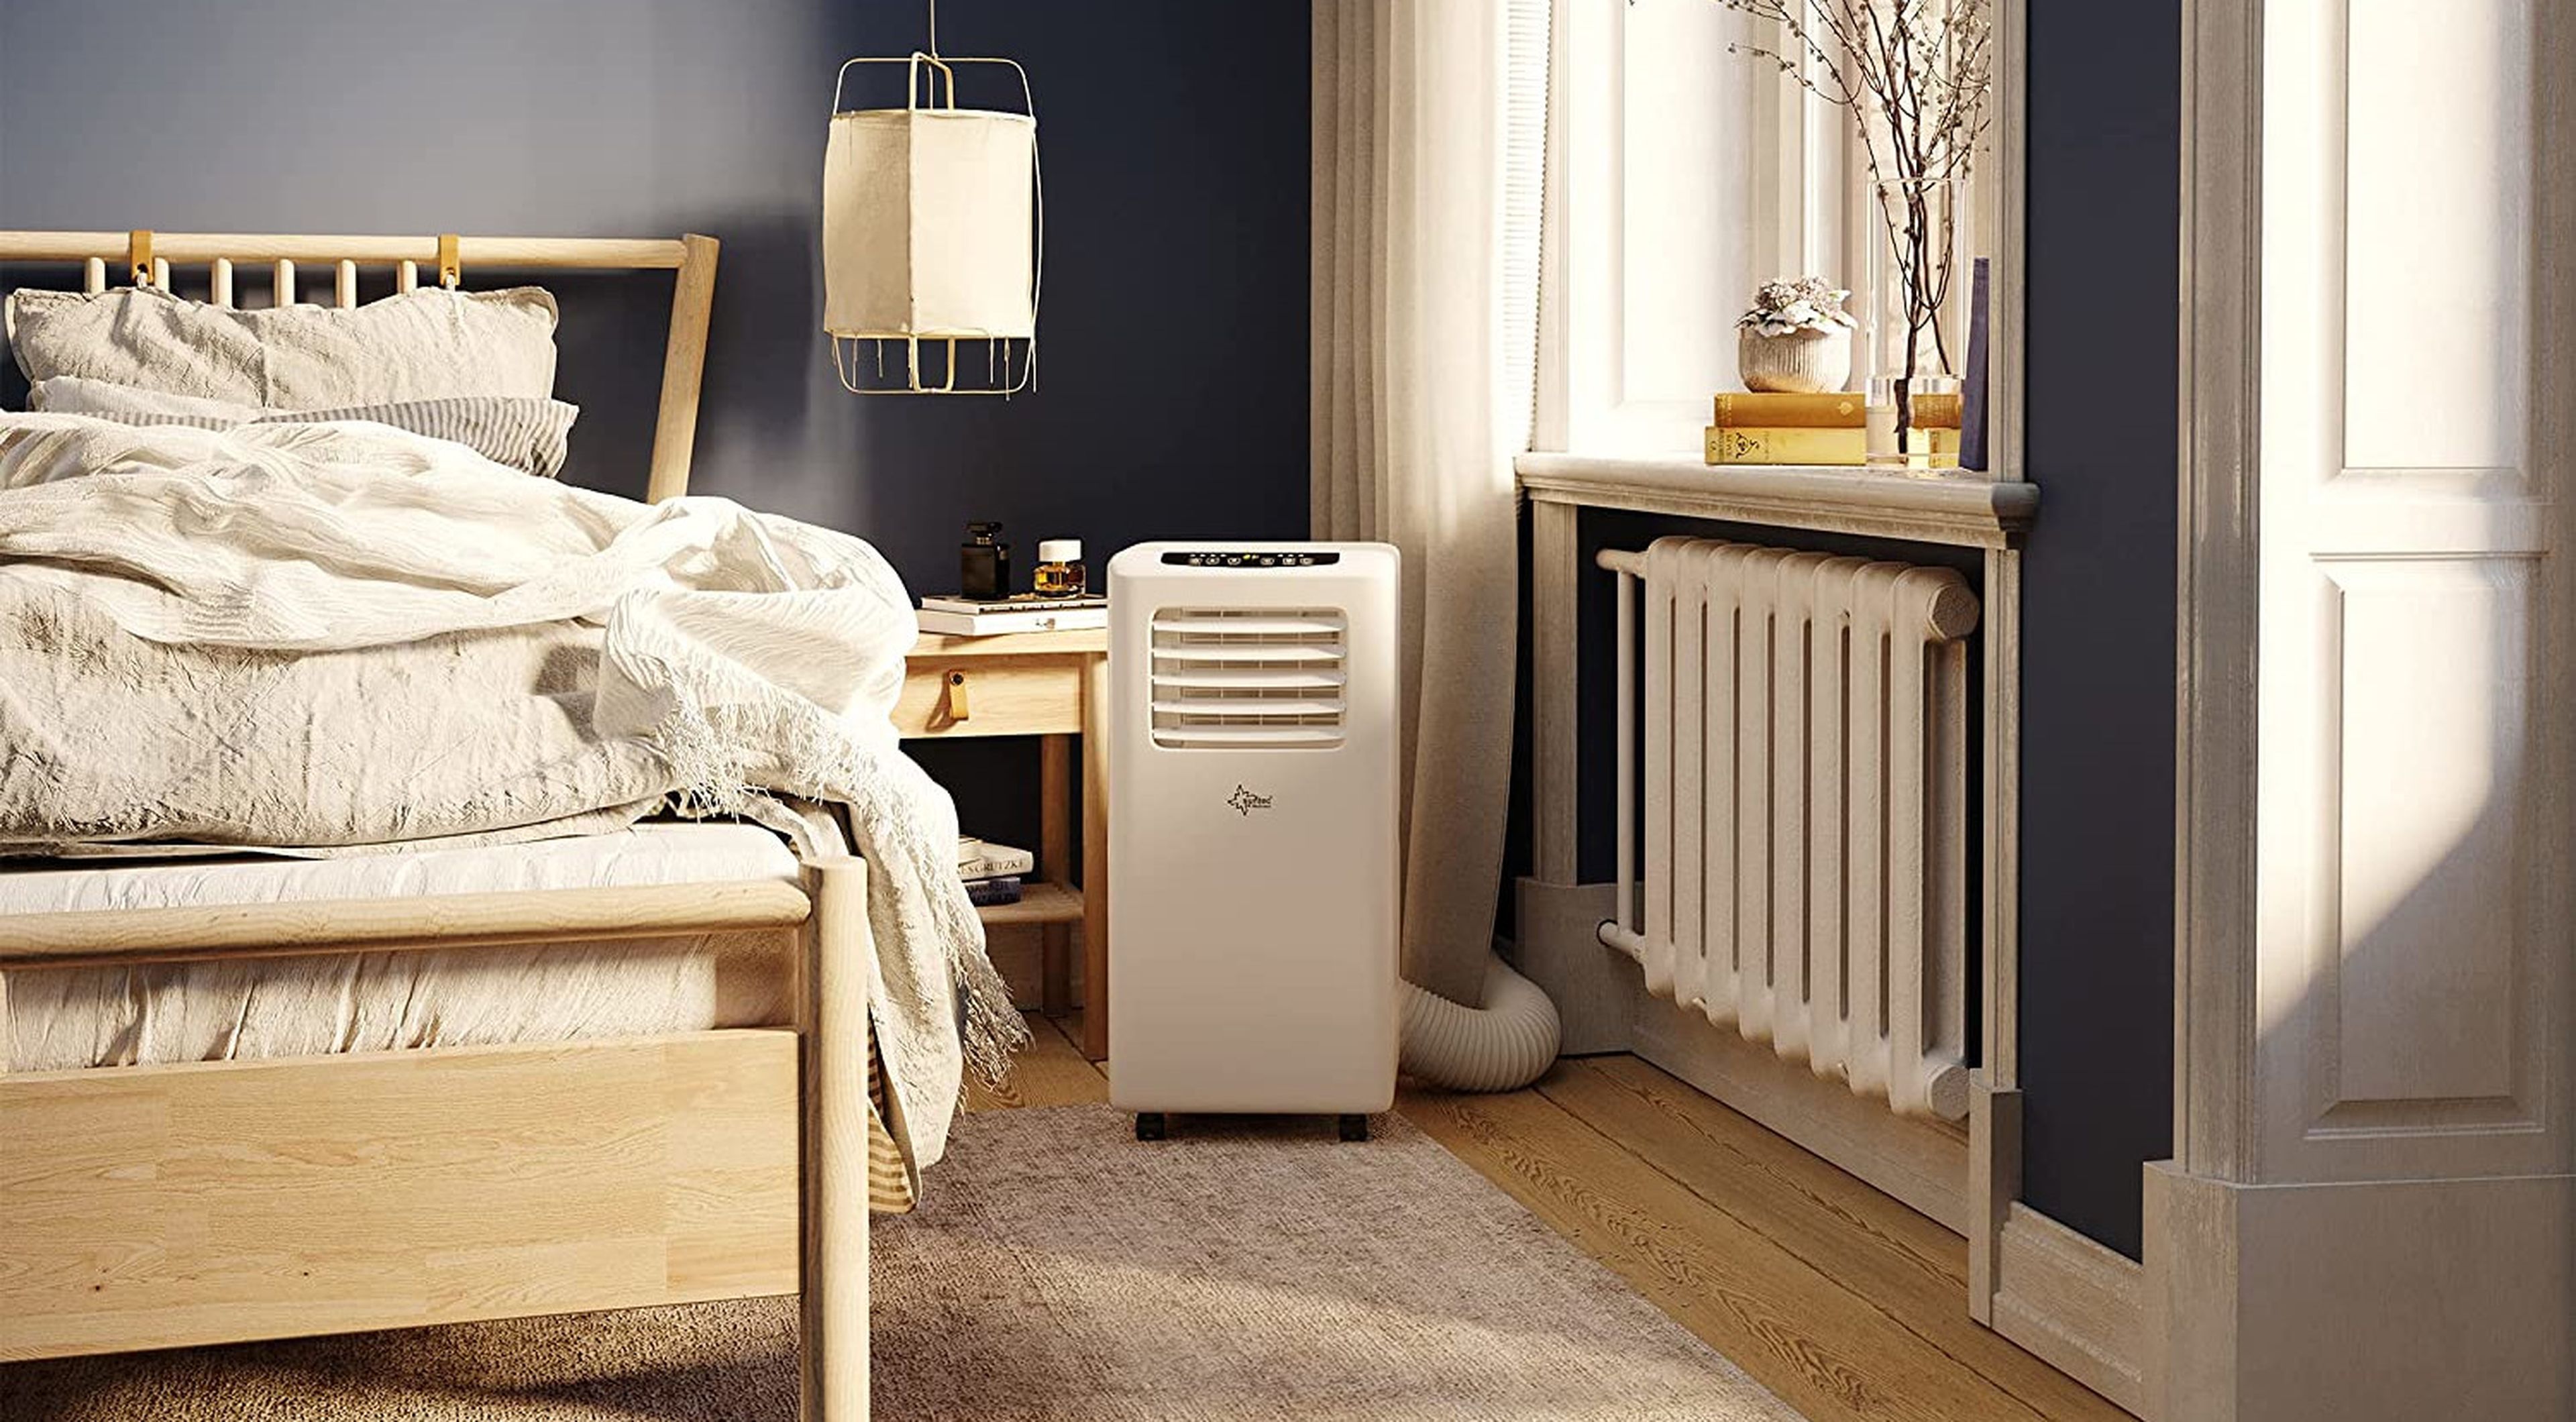 El aire acondicionado portátil para colocar sin instalación en la ventana y  enfriar tu casa en minutos